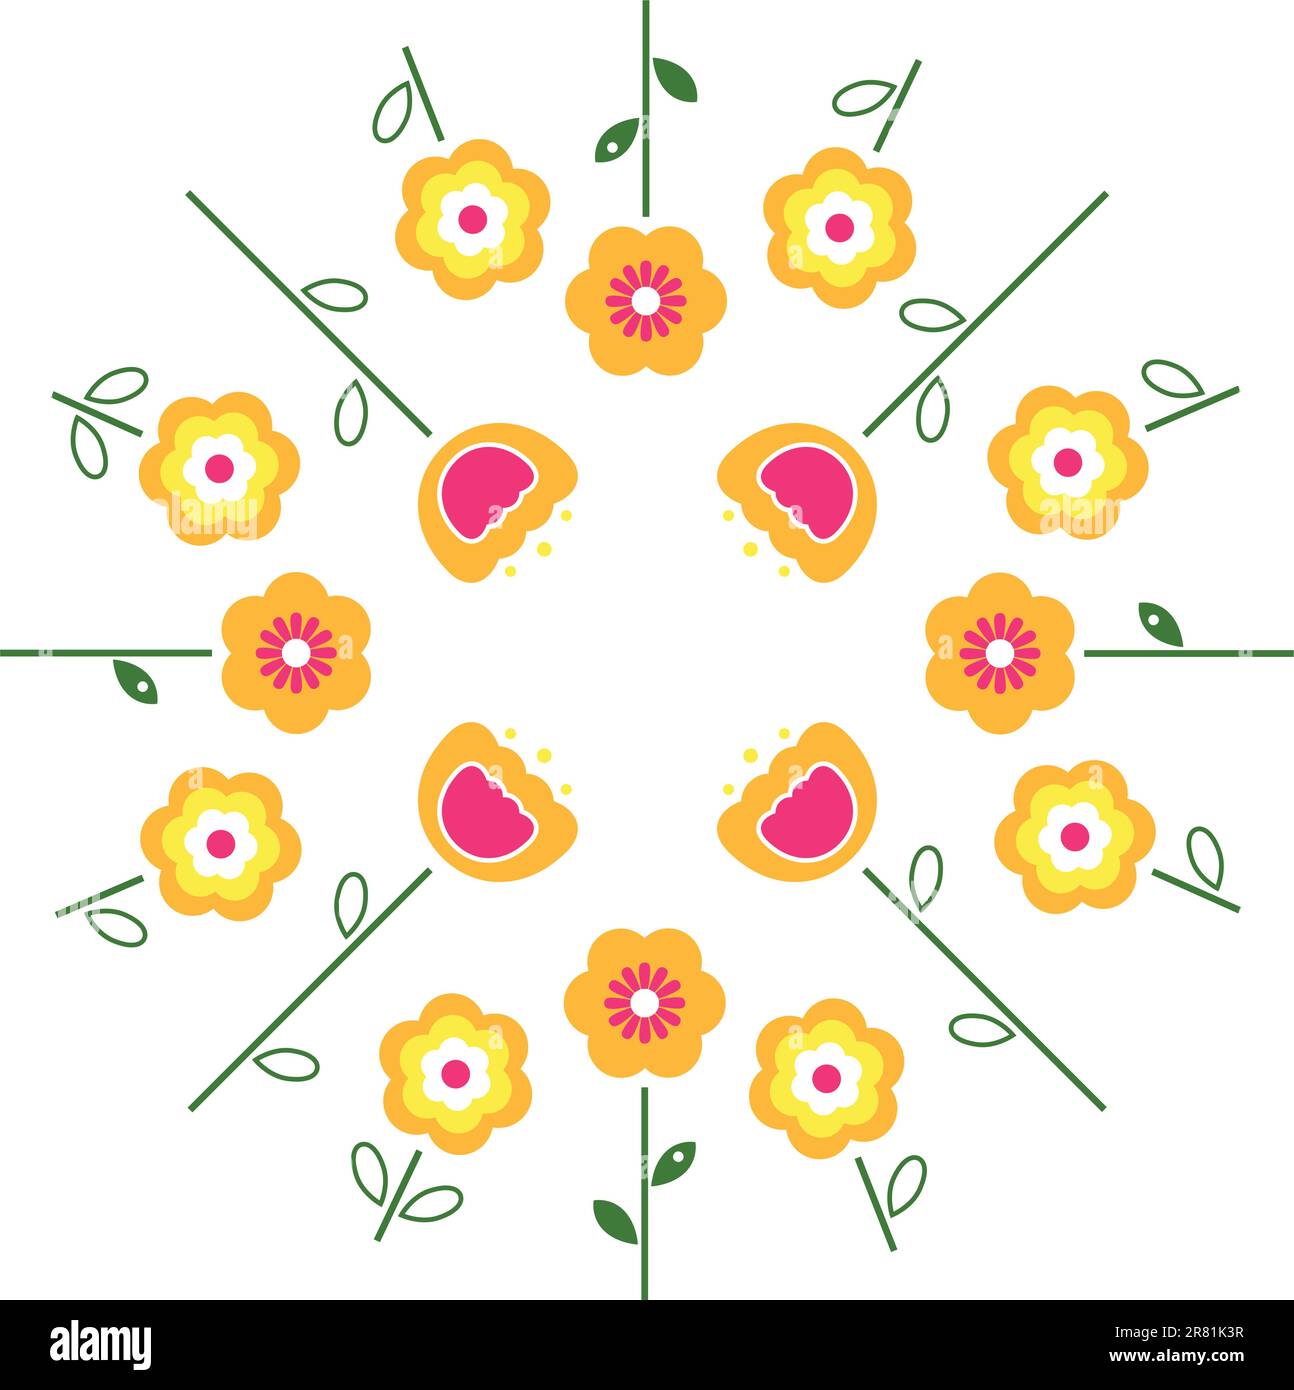 Gelbe und rosafarbene Blüten im Kreis, isoliert auf Weiß. Vektor Stock Vektor